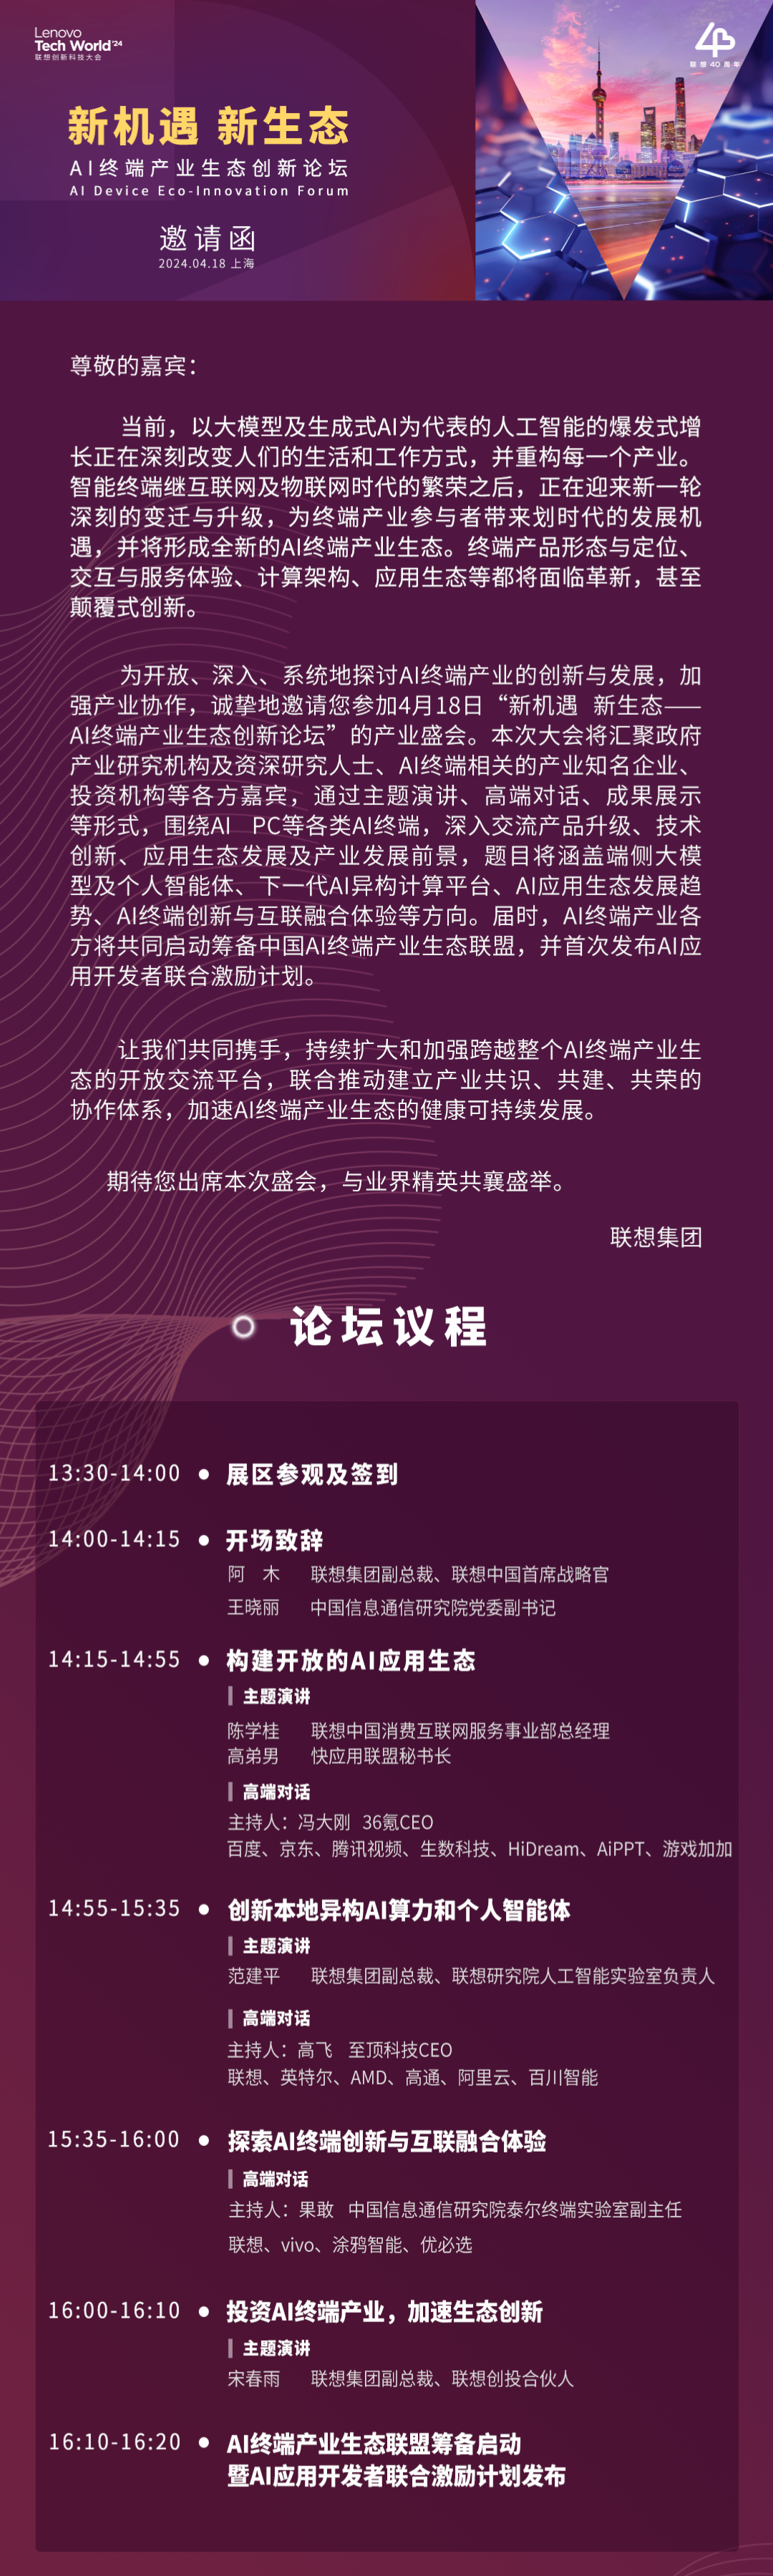 新机遇 新生态 | AI终端产业生态创新论坛4月18日上海举办